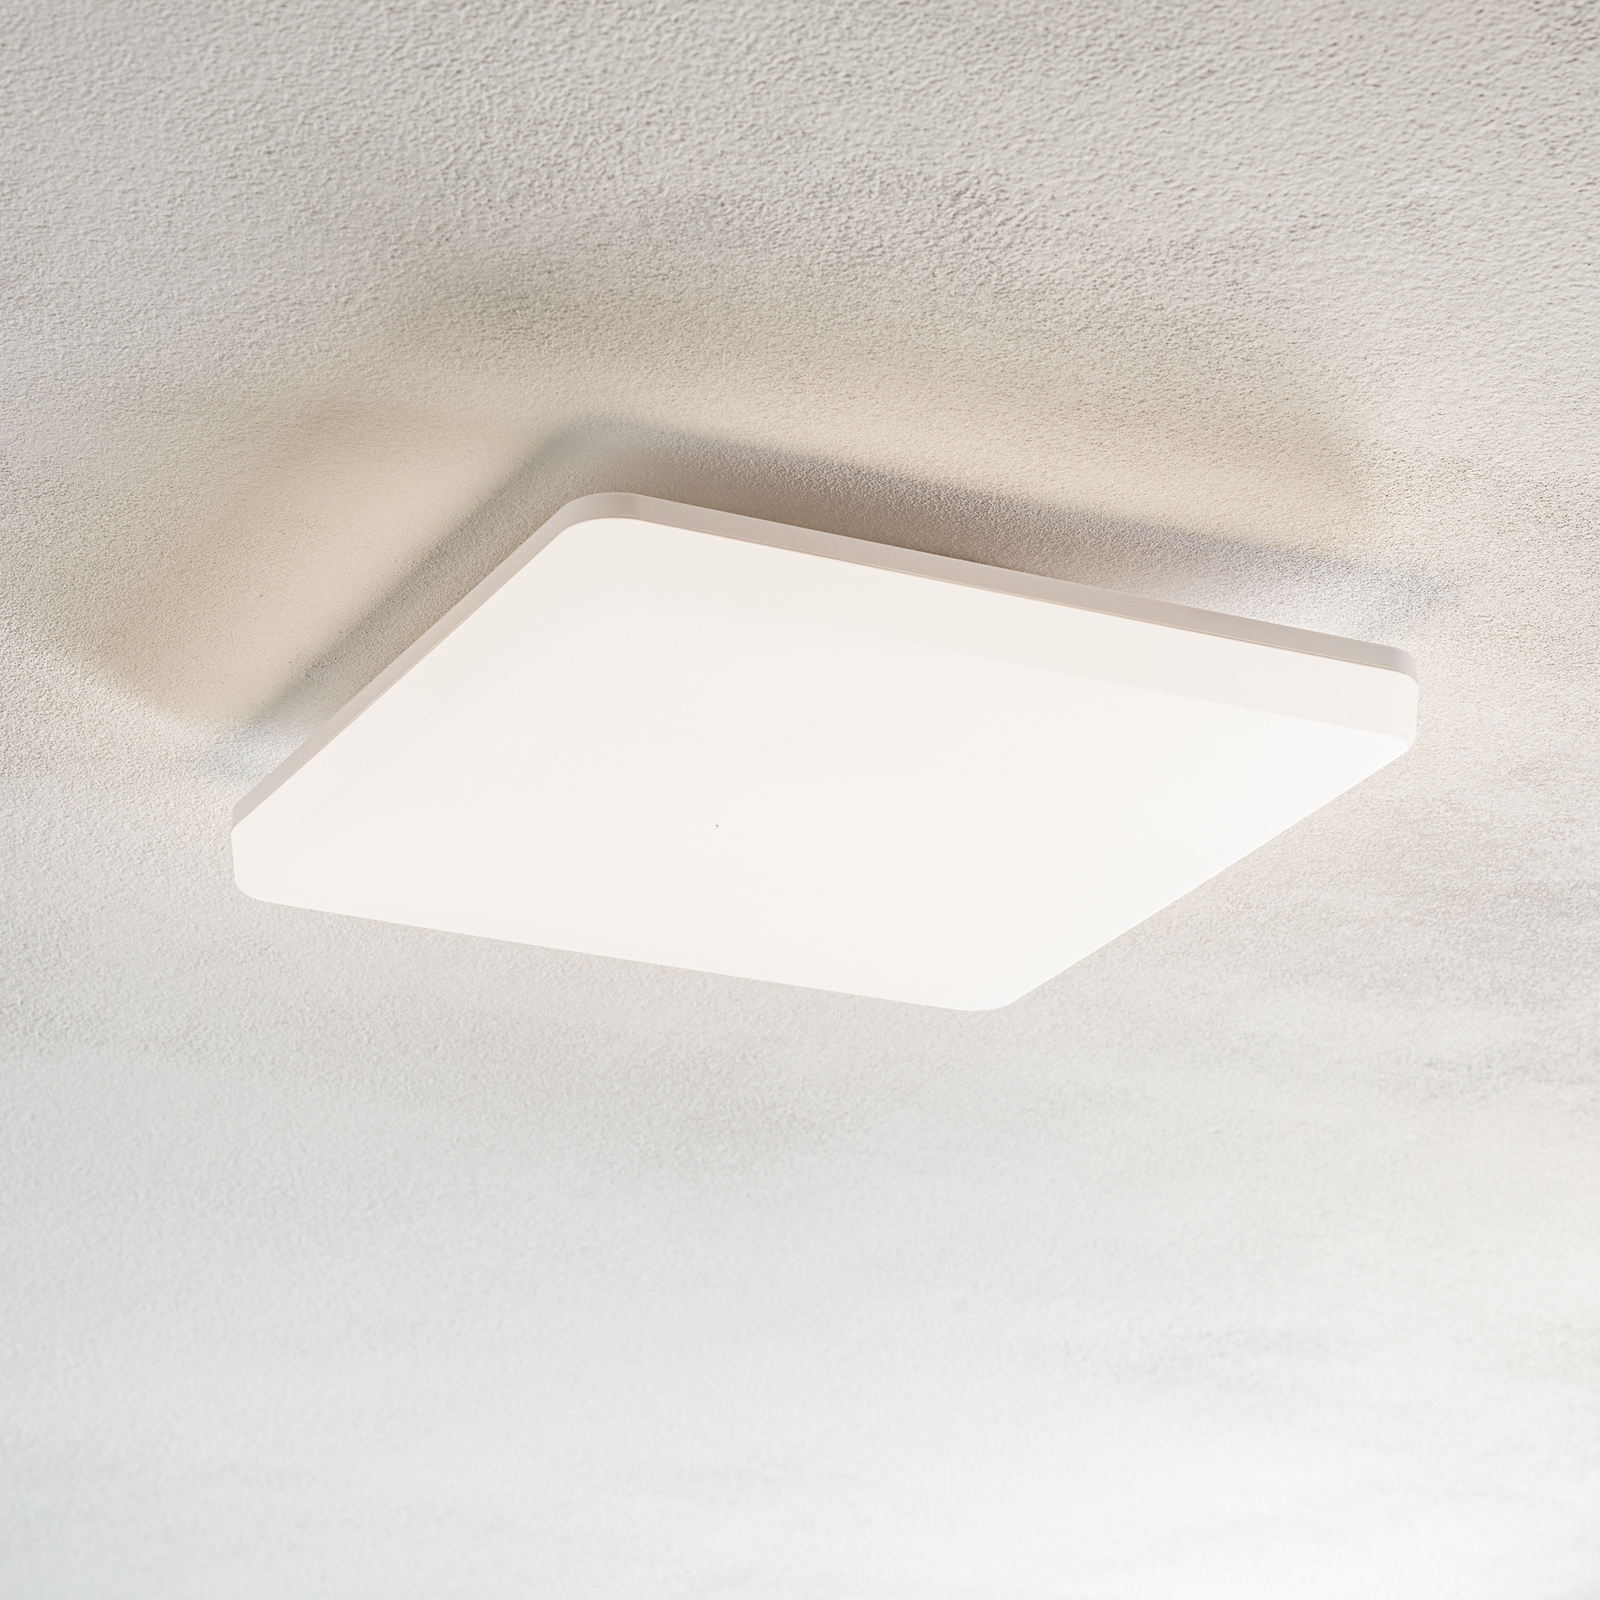 LED sensor ceiling light Pronto, angular, 33x33cm